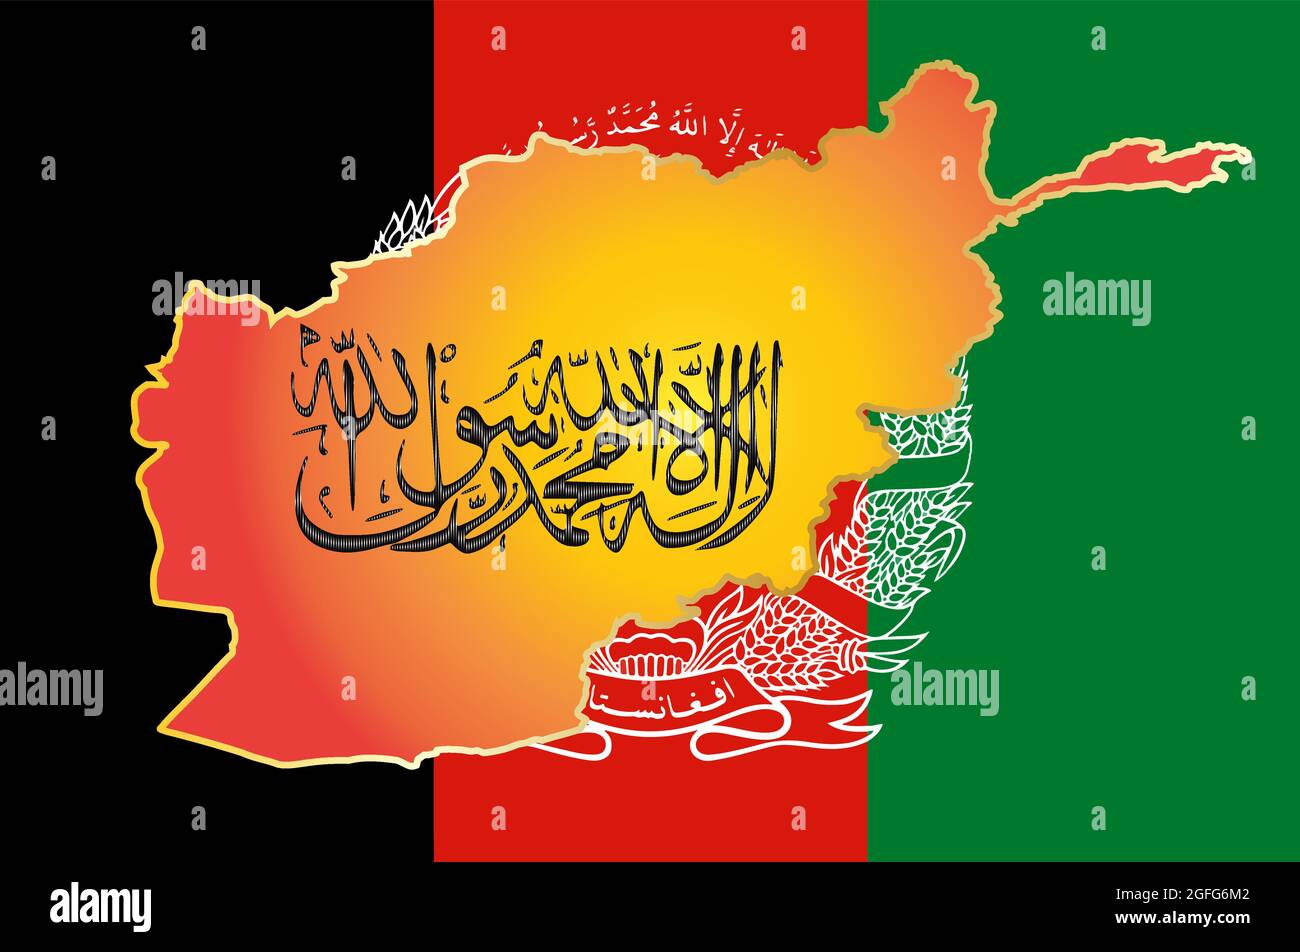 Scrittura calligrafica della Repubblica islamica dell'Afghanistan di Taliban Shahada su una mappa. Mappa sullo sfondo della bandiera dell'Afghanistan. Illustrazione Vettoriale